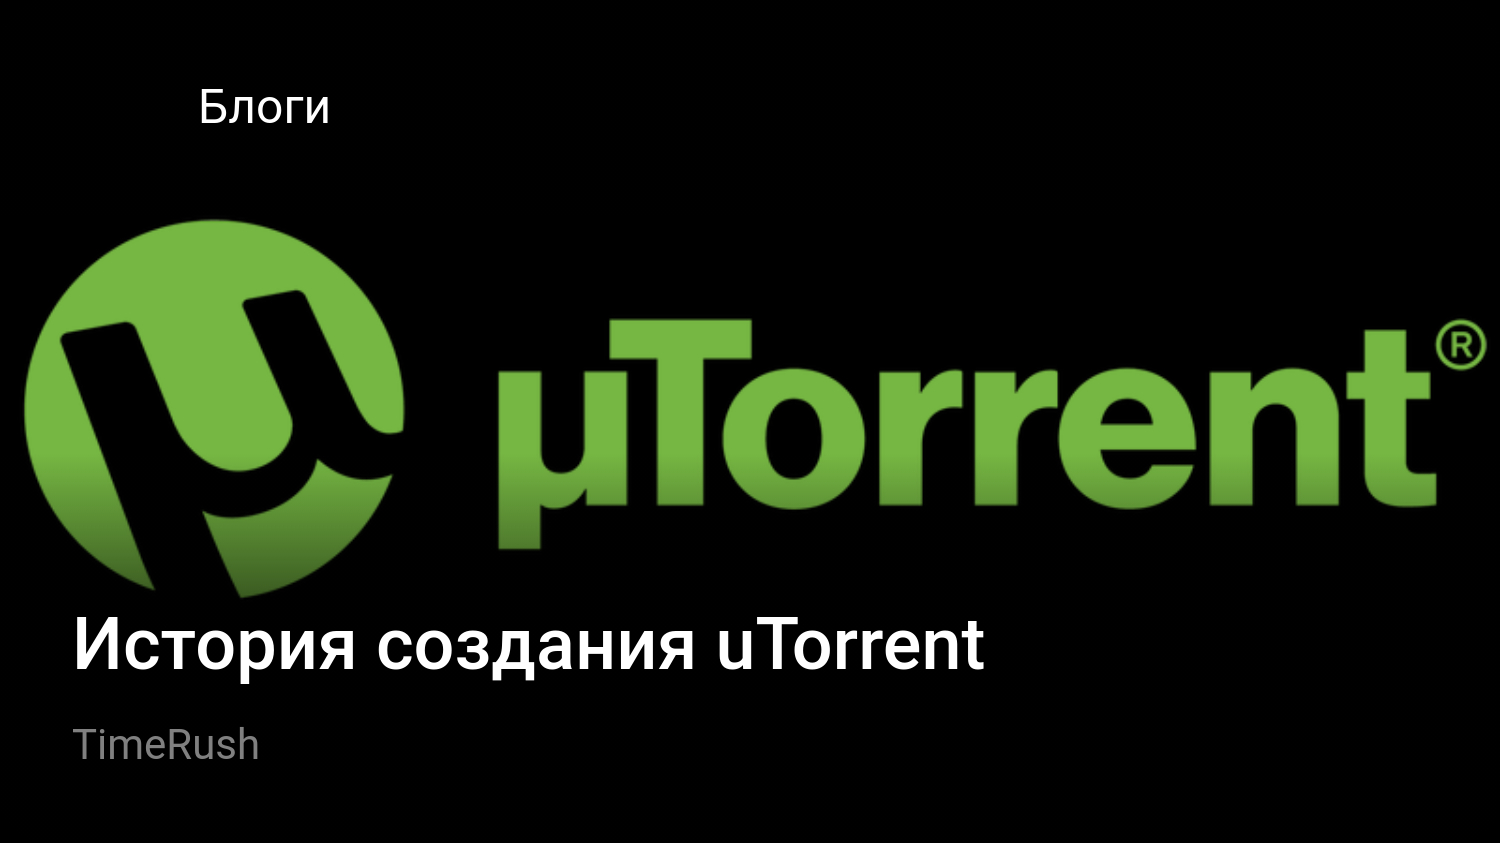 Www utorrent com intl. Utorrent. Utorrent логотип. Utorrent картинки. Ярлык utorrent.